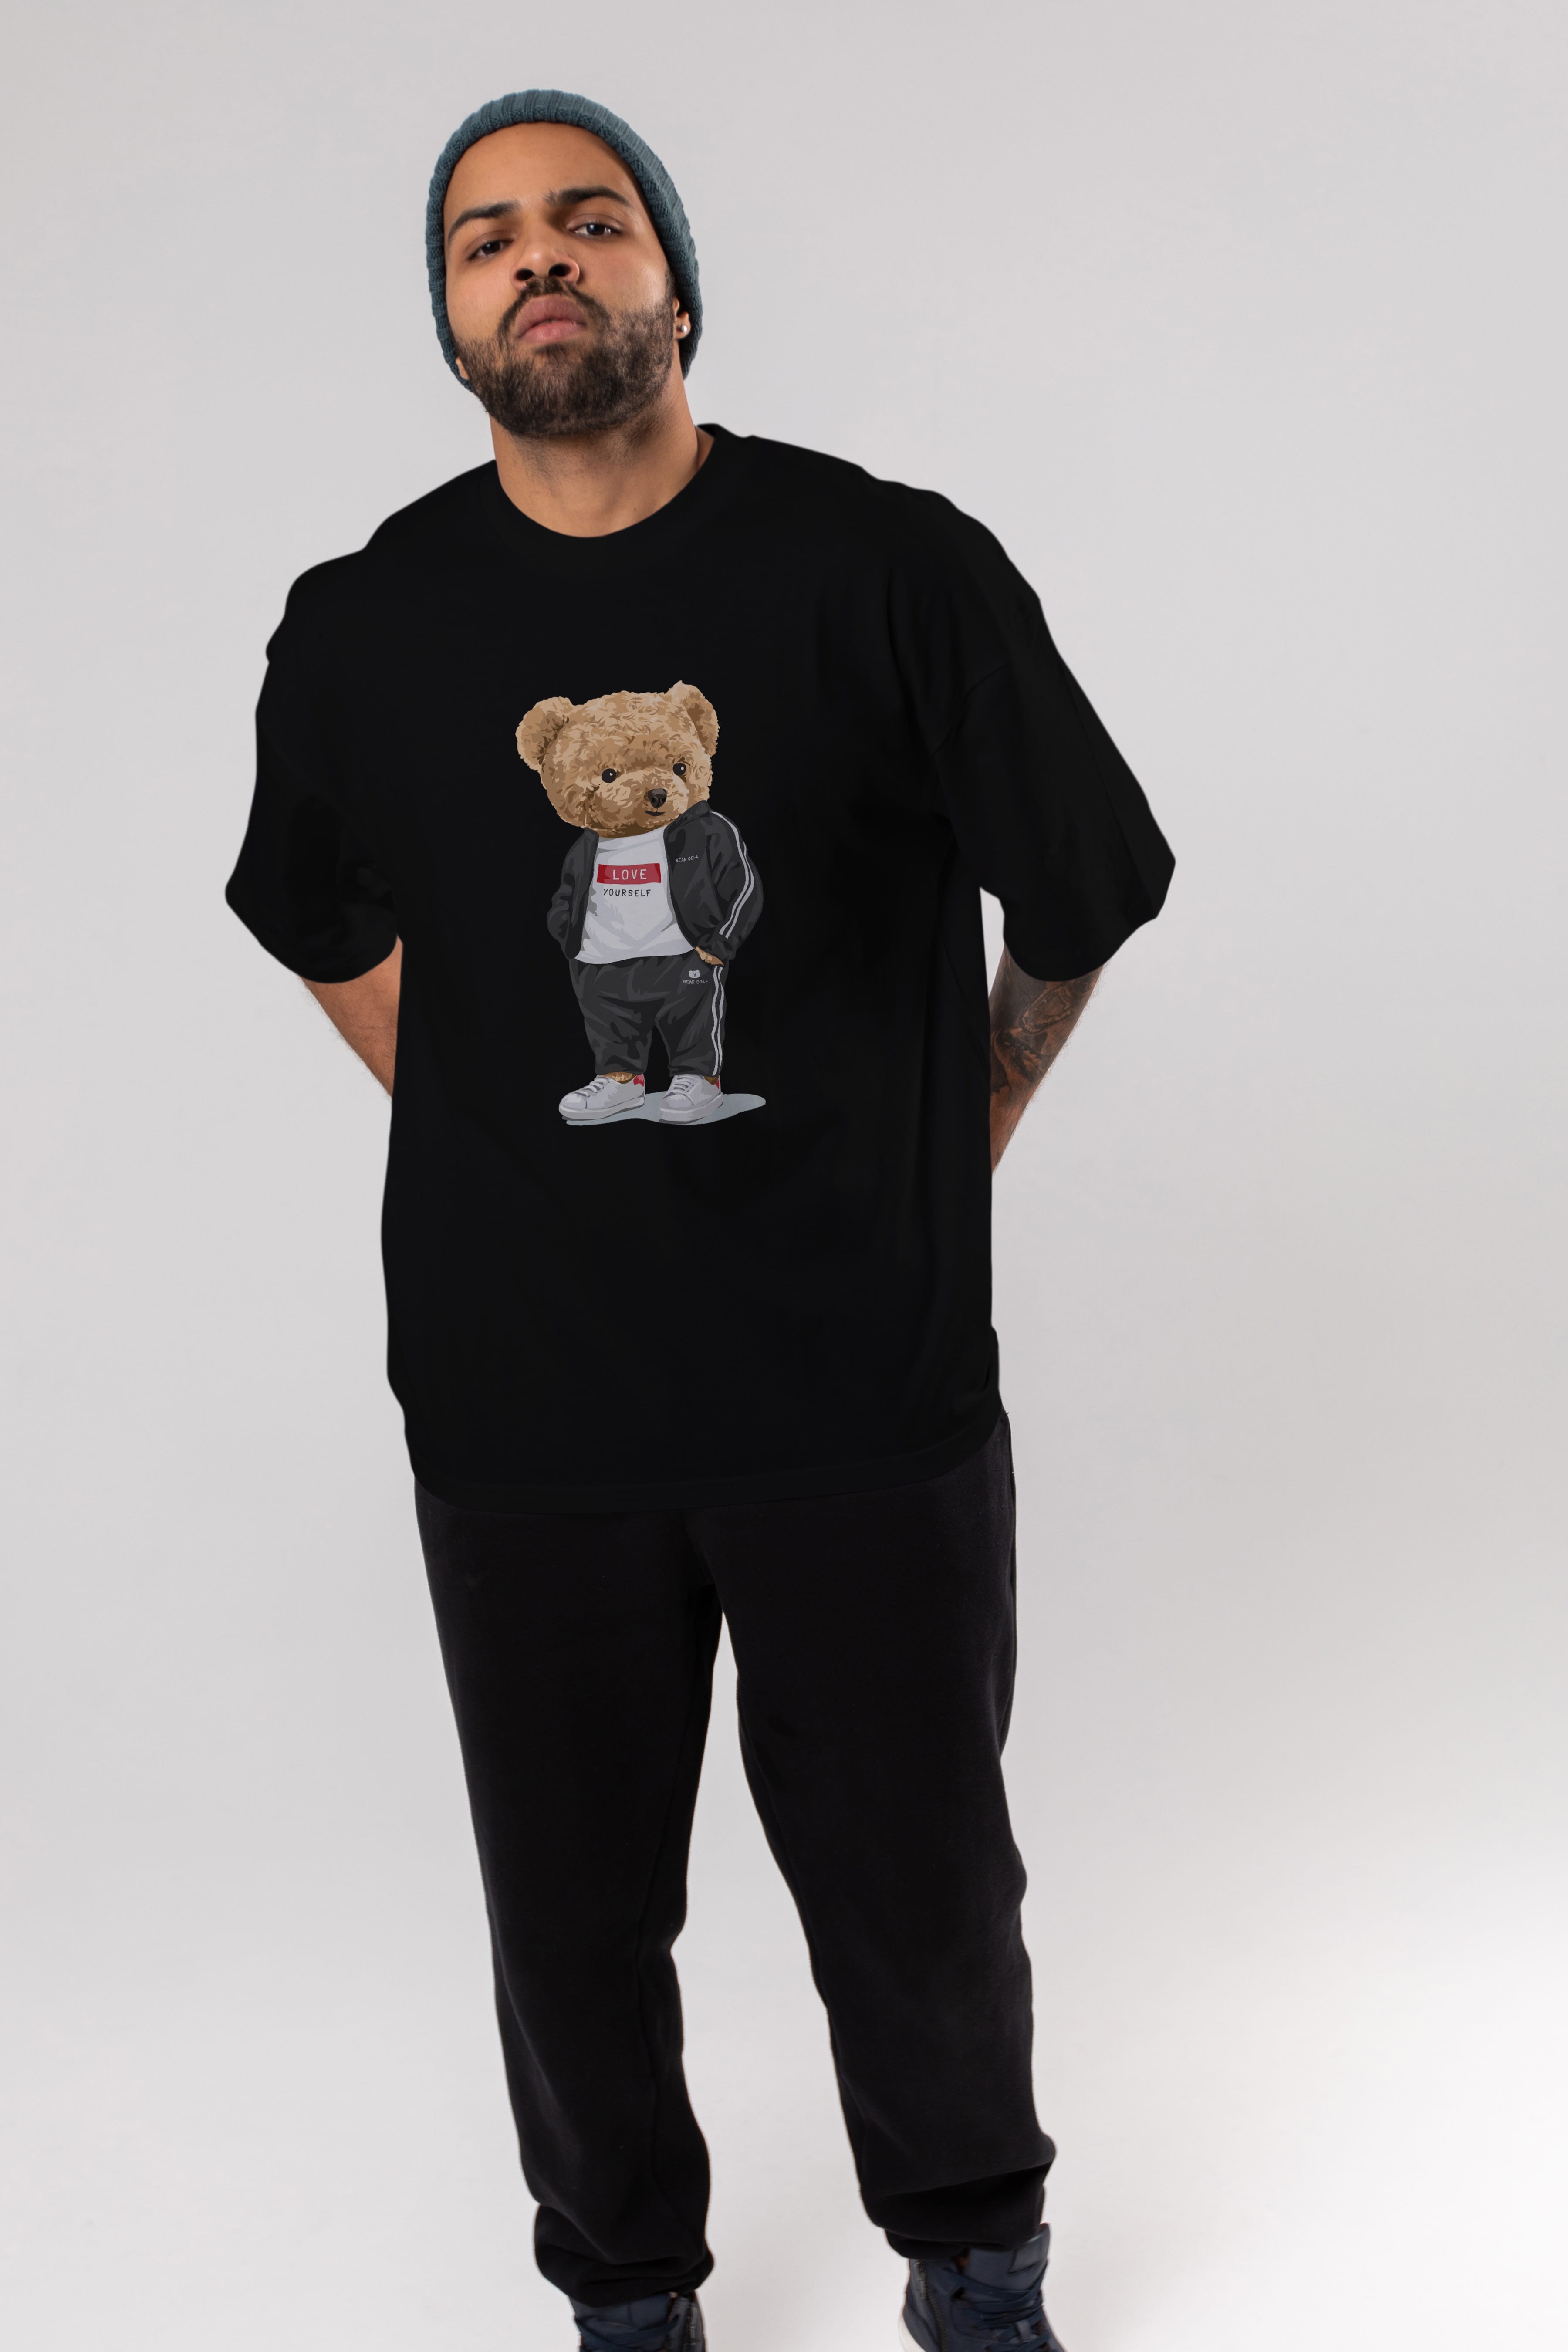 Teddy Bear Love Yourself Ön Baskılı Oversize t-shirt Erkek Kadın Unisex %100 Pamuk